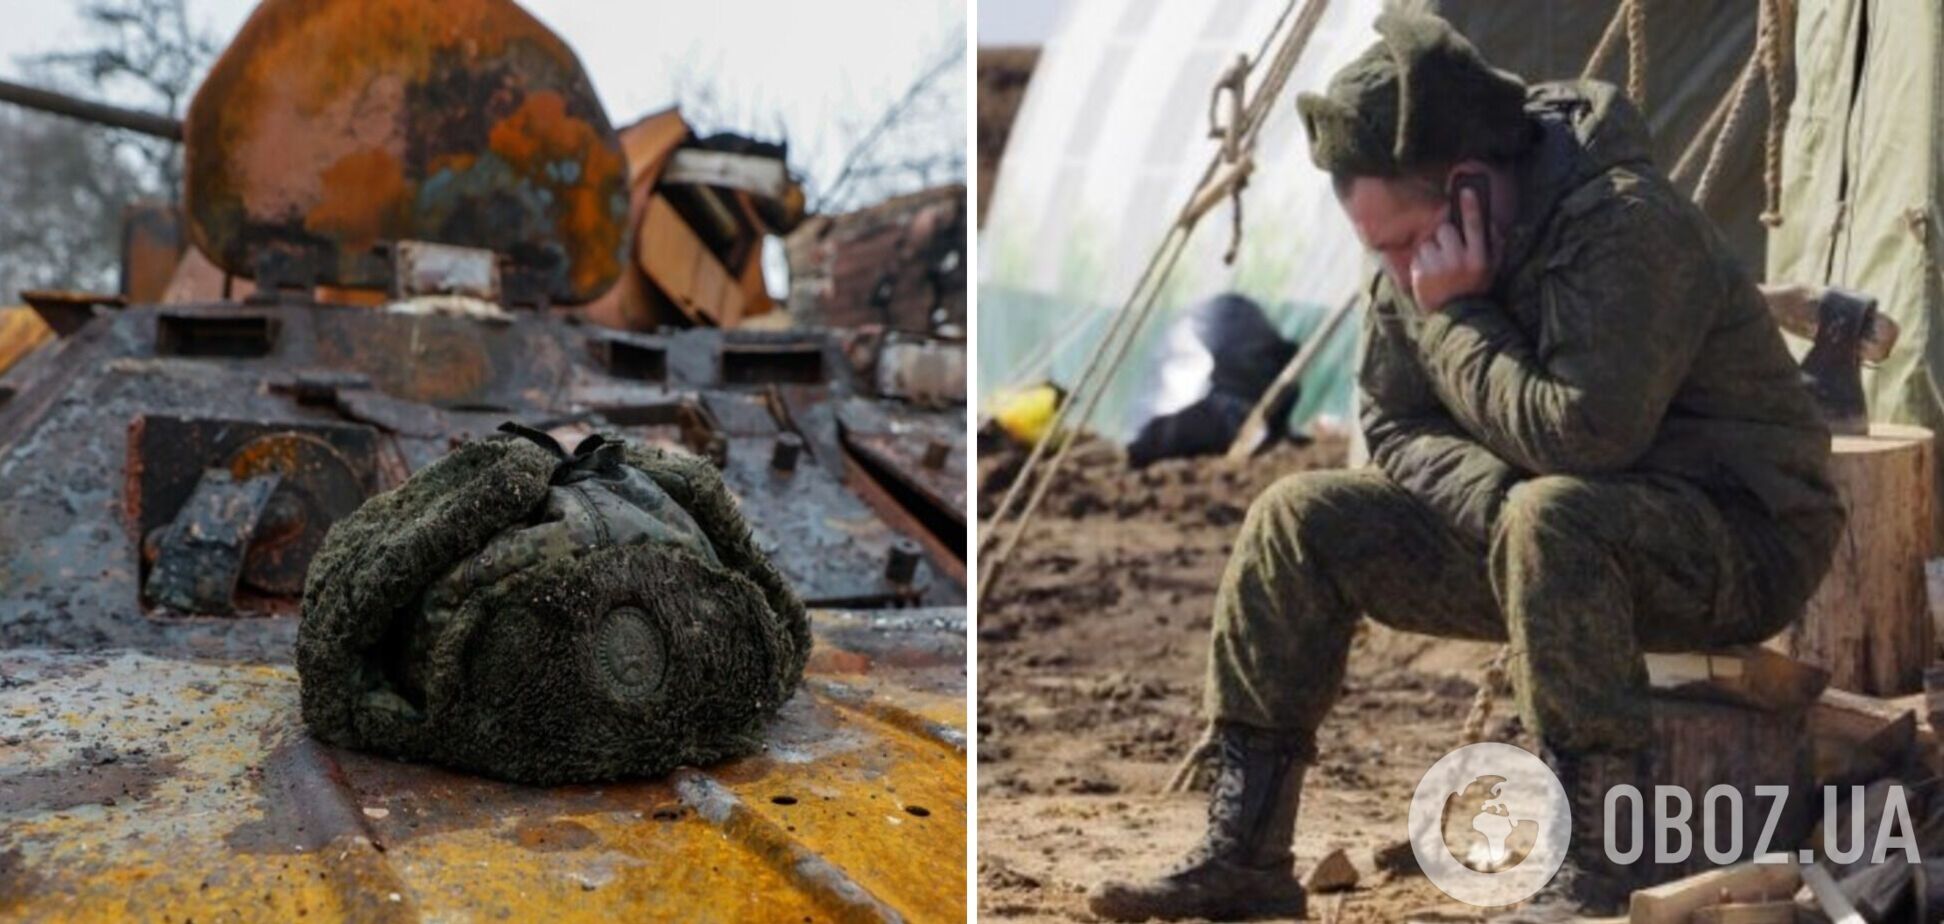 'Может, мы не за тех воюем?' Российские военные скулят о тяжелой судьбе под Угледаром. Перехват